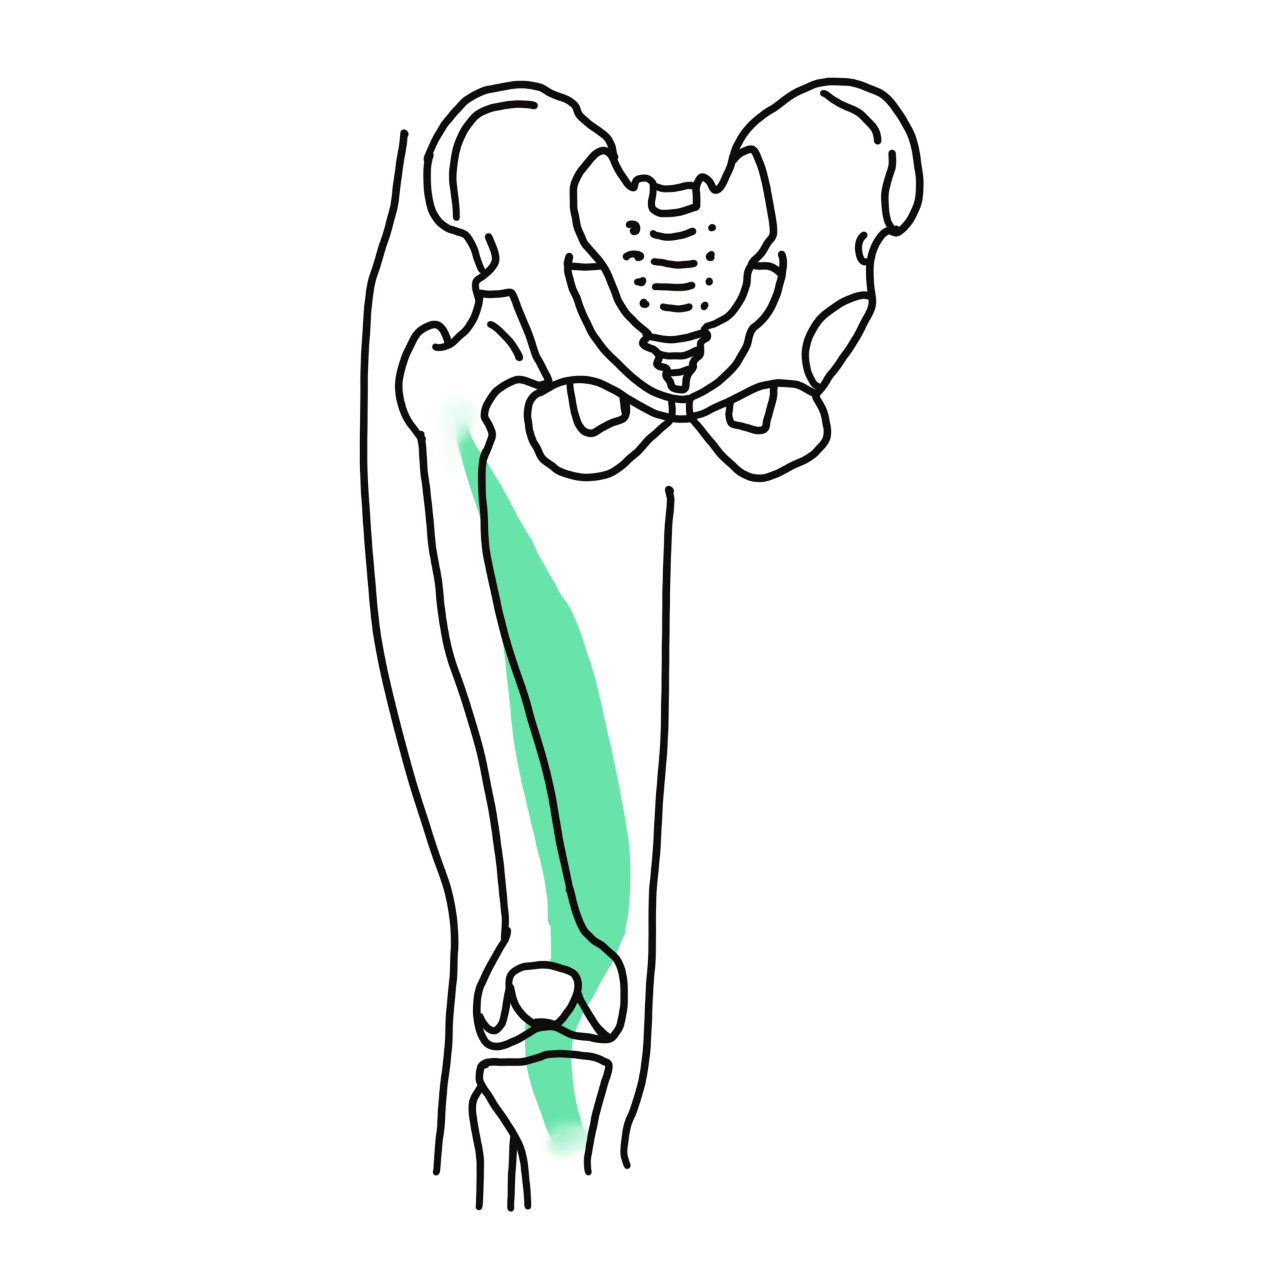 Vastus medialis muscle in knee joint